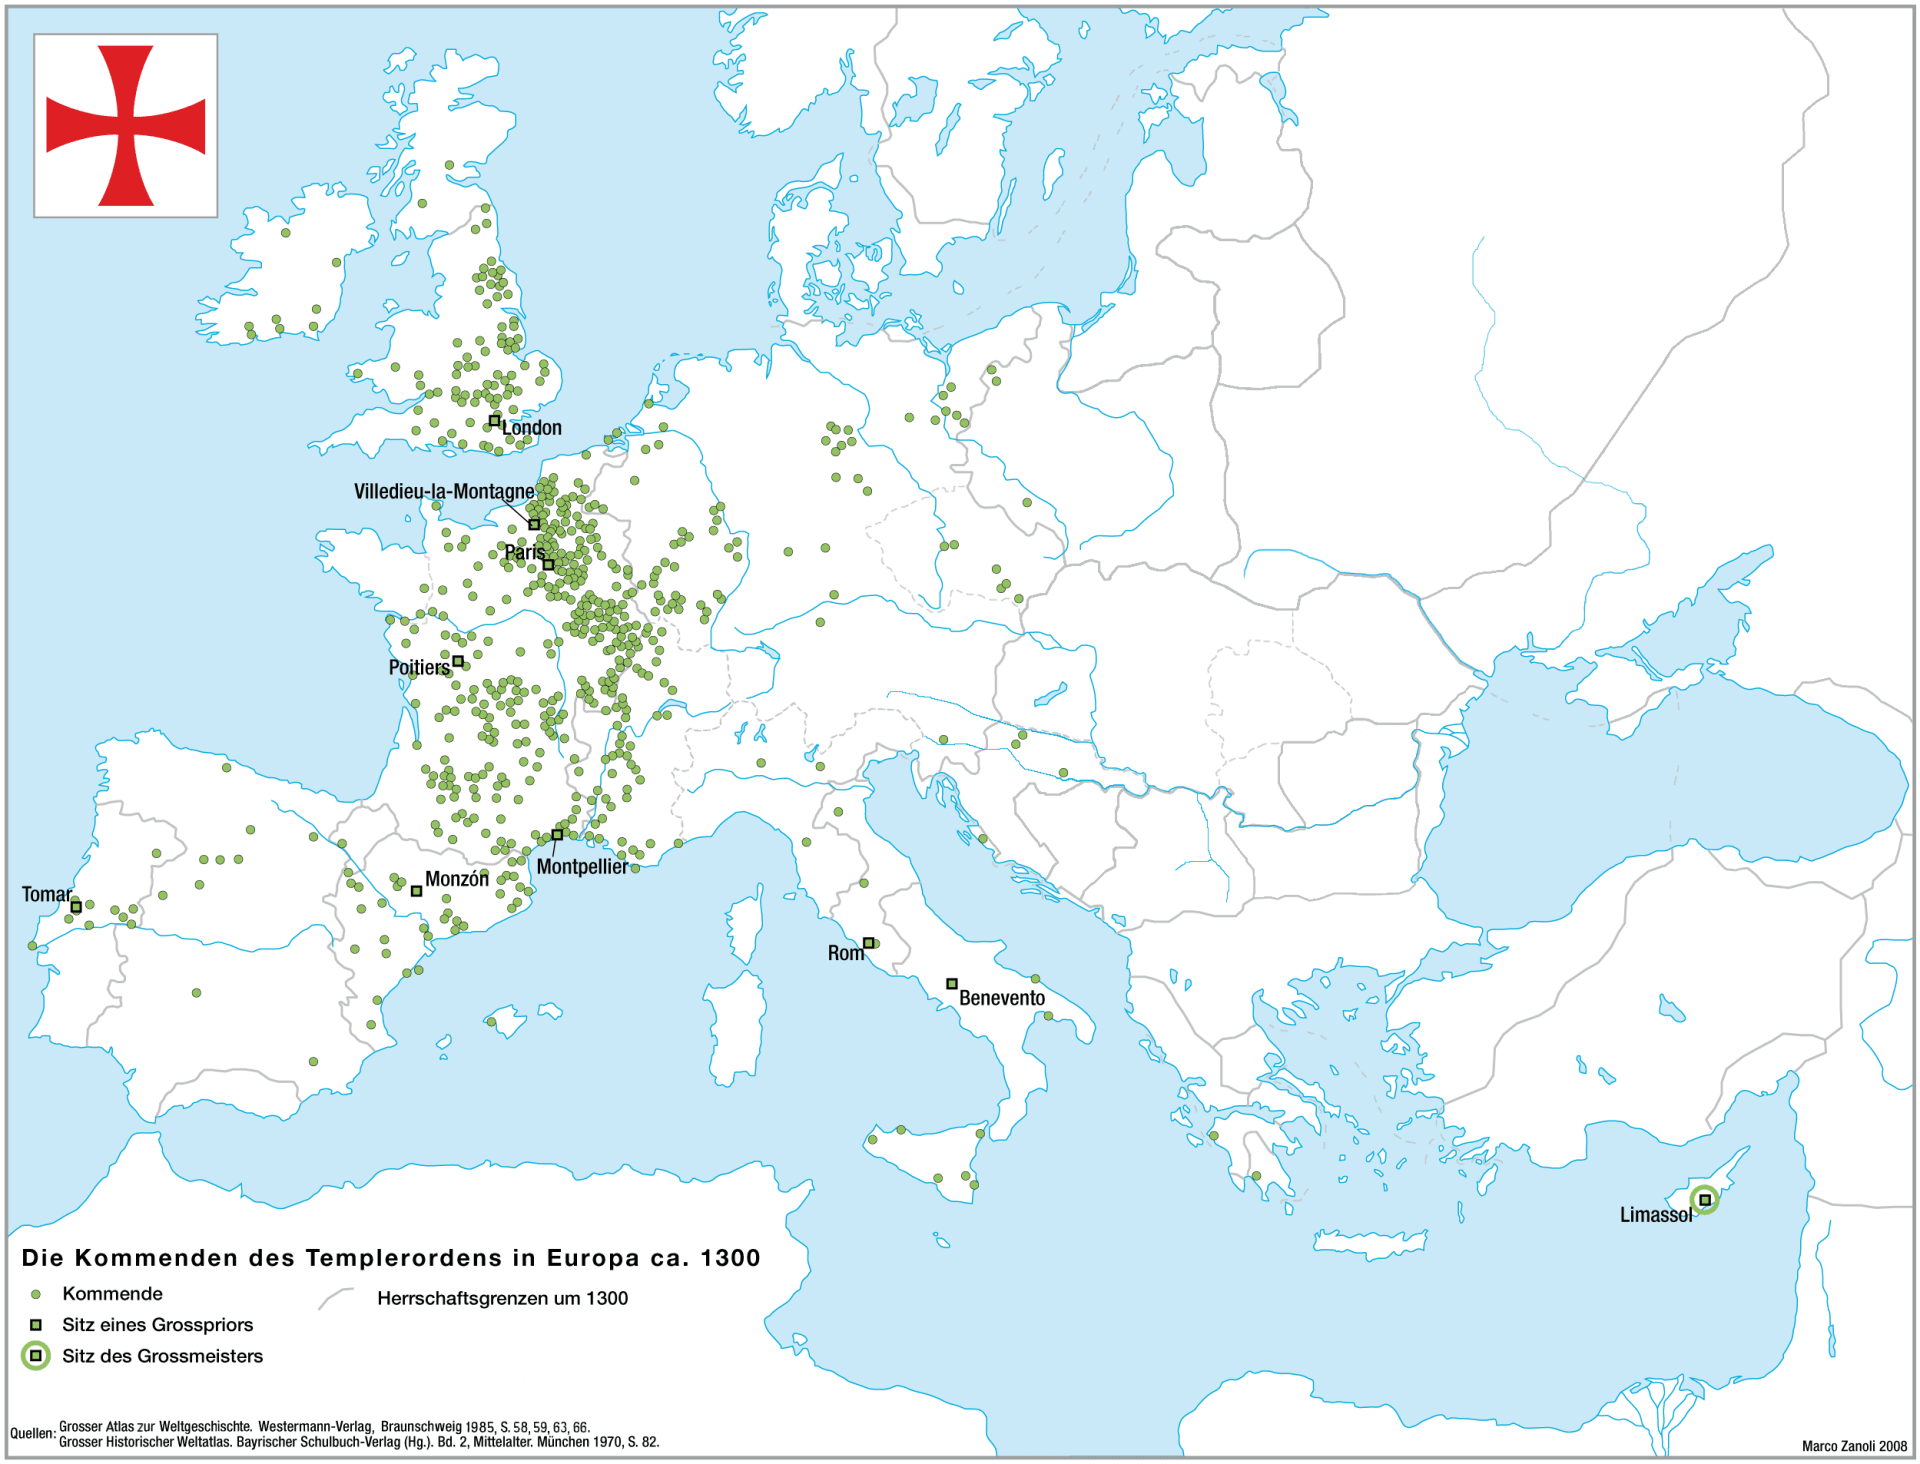 Templářské komendy v Evropě kolem roku 1300